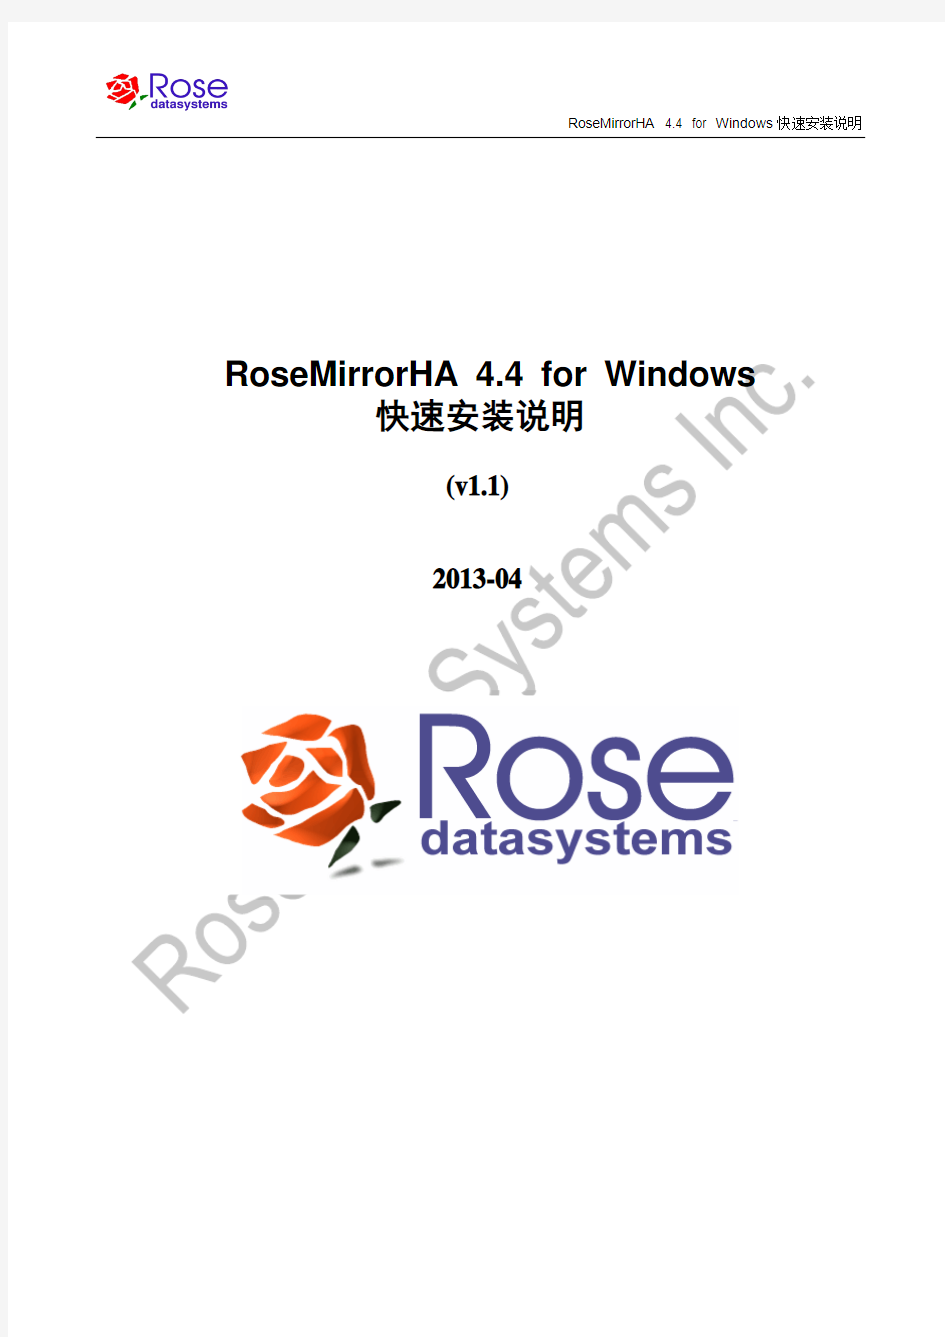 RoseMirrorHA 4.4 for Windows快速安装说明v1.1-2013-04